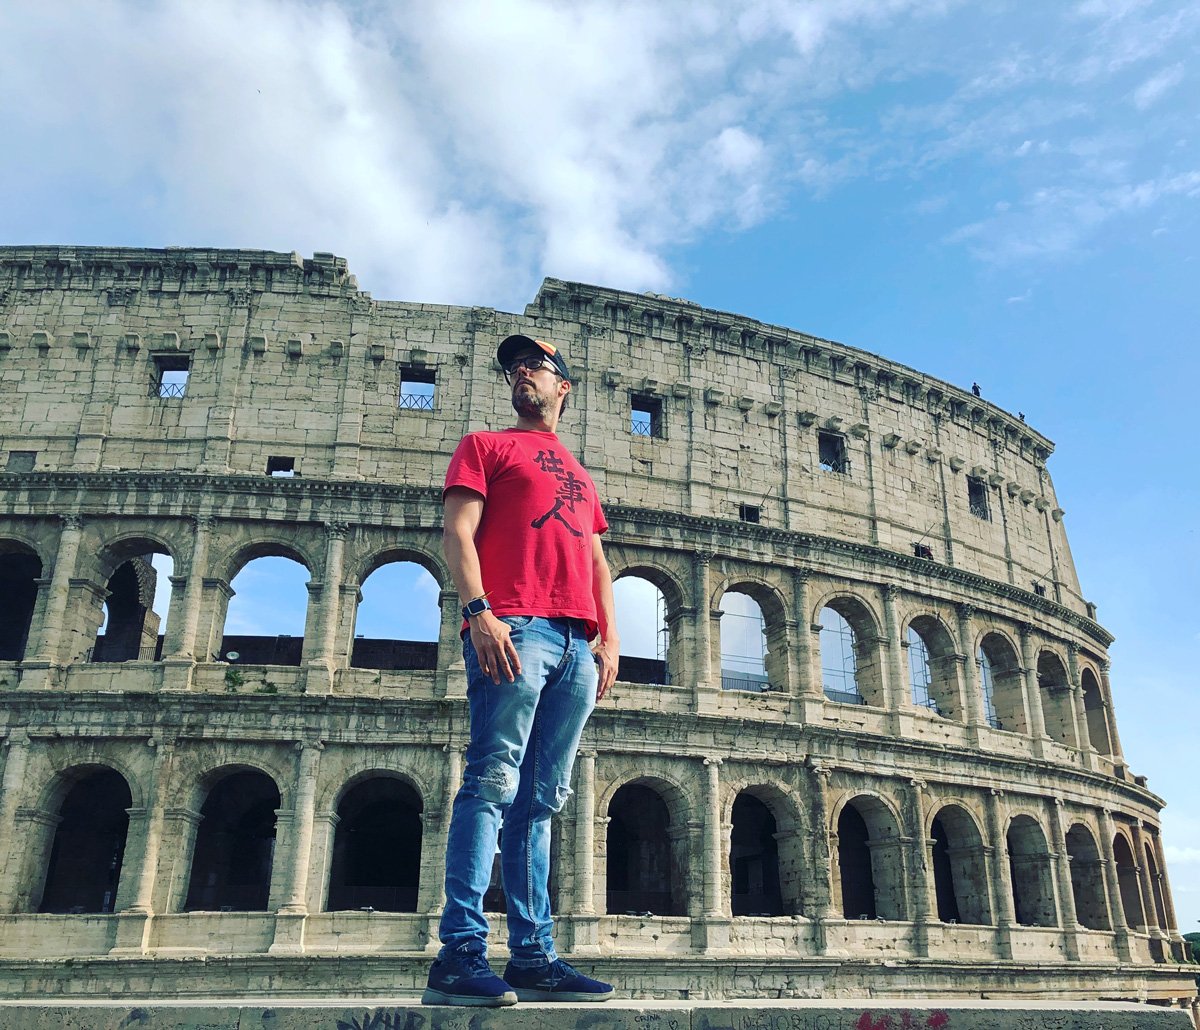 Iosu en Roma siempre viajando con uno de los mejores seguro de viaje barato para mochileros